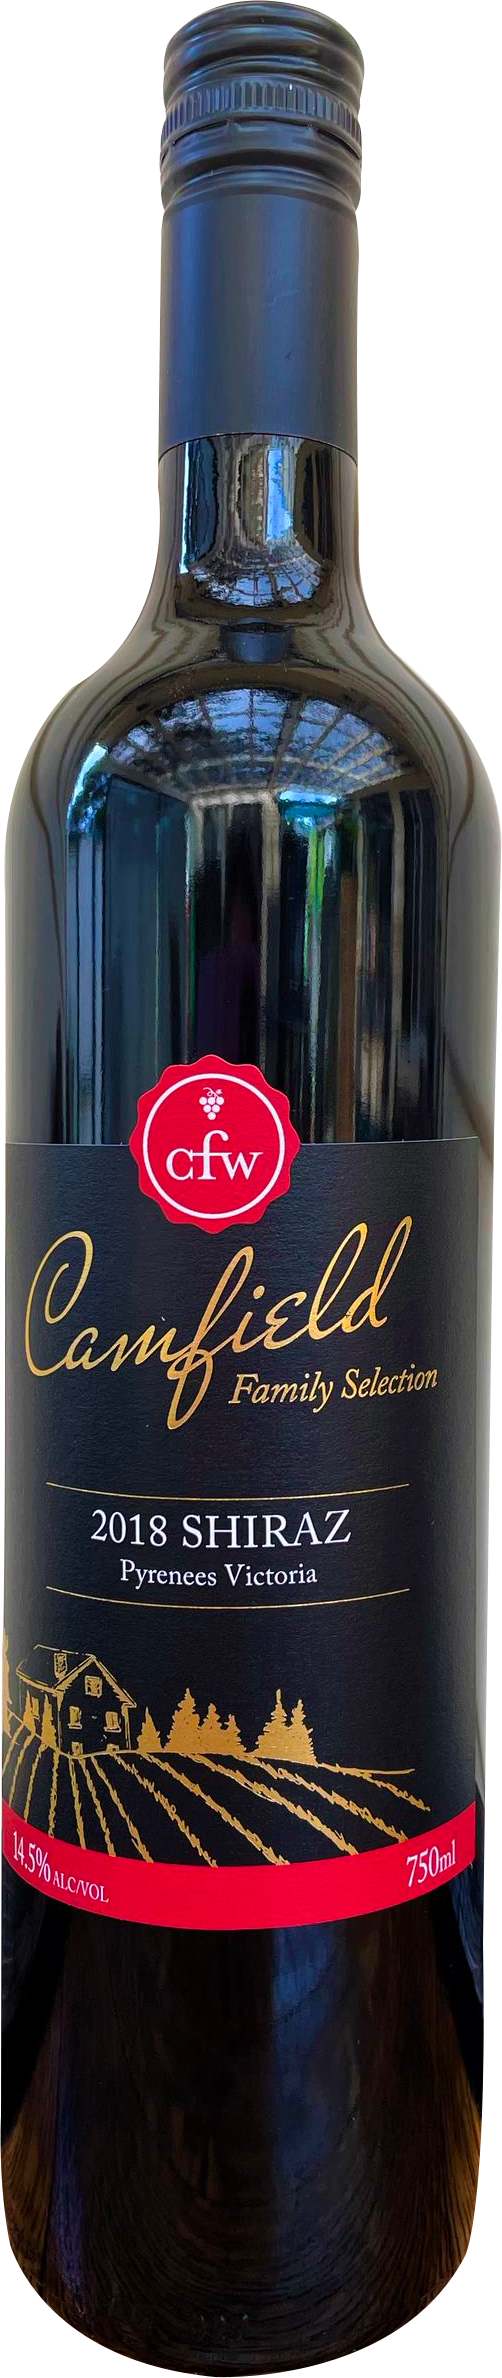 Camfield Family Selection-Shiraz 2018